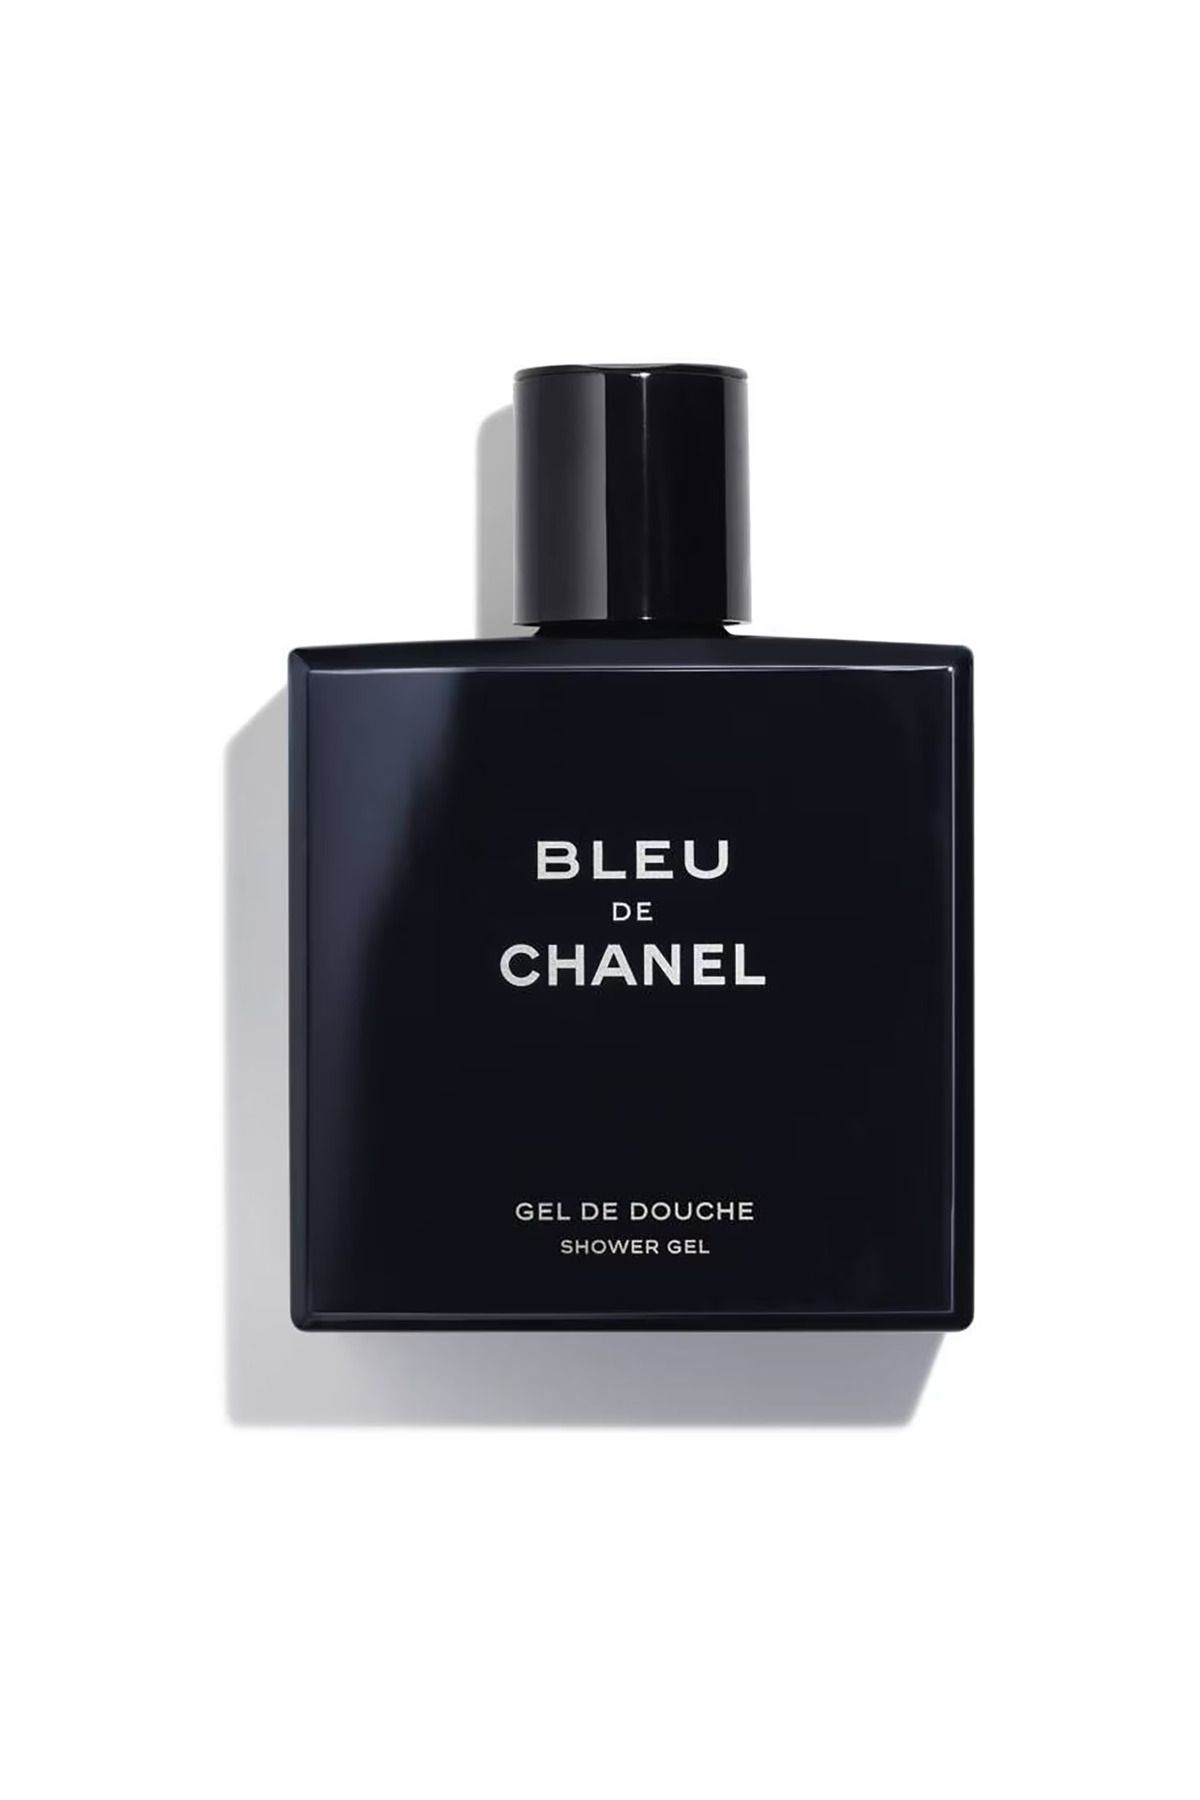 Chanel BLEU DE CHANEL Duş Jeli-Erkek Vücut Bakımı Duş Ve Banyo Ürünleri-200ml